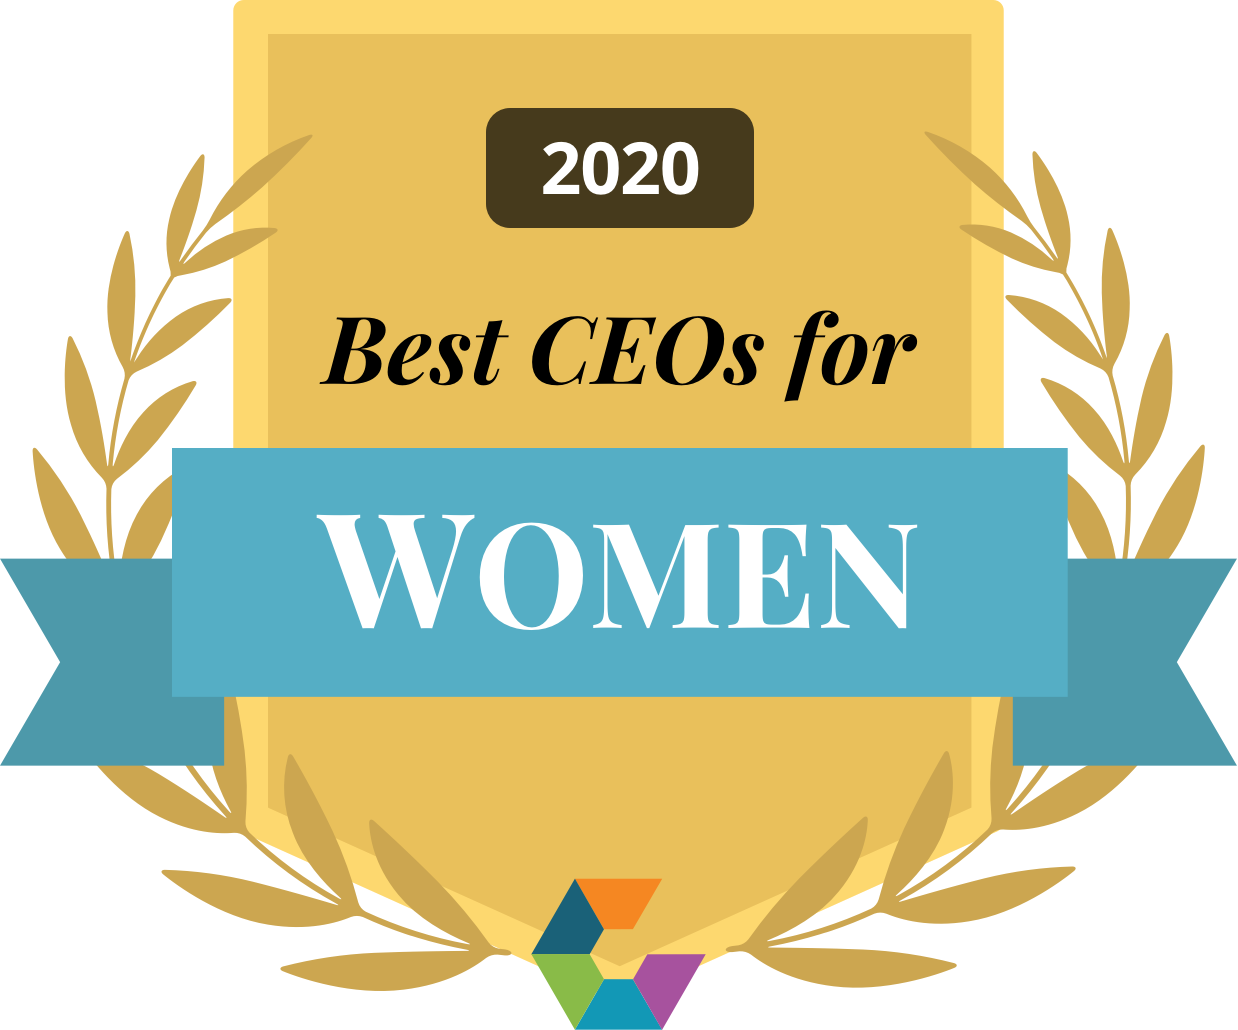 Best CEOs for Women 2020